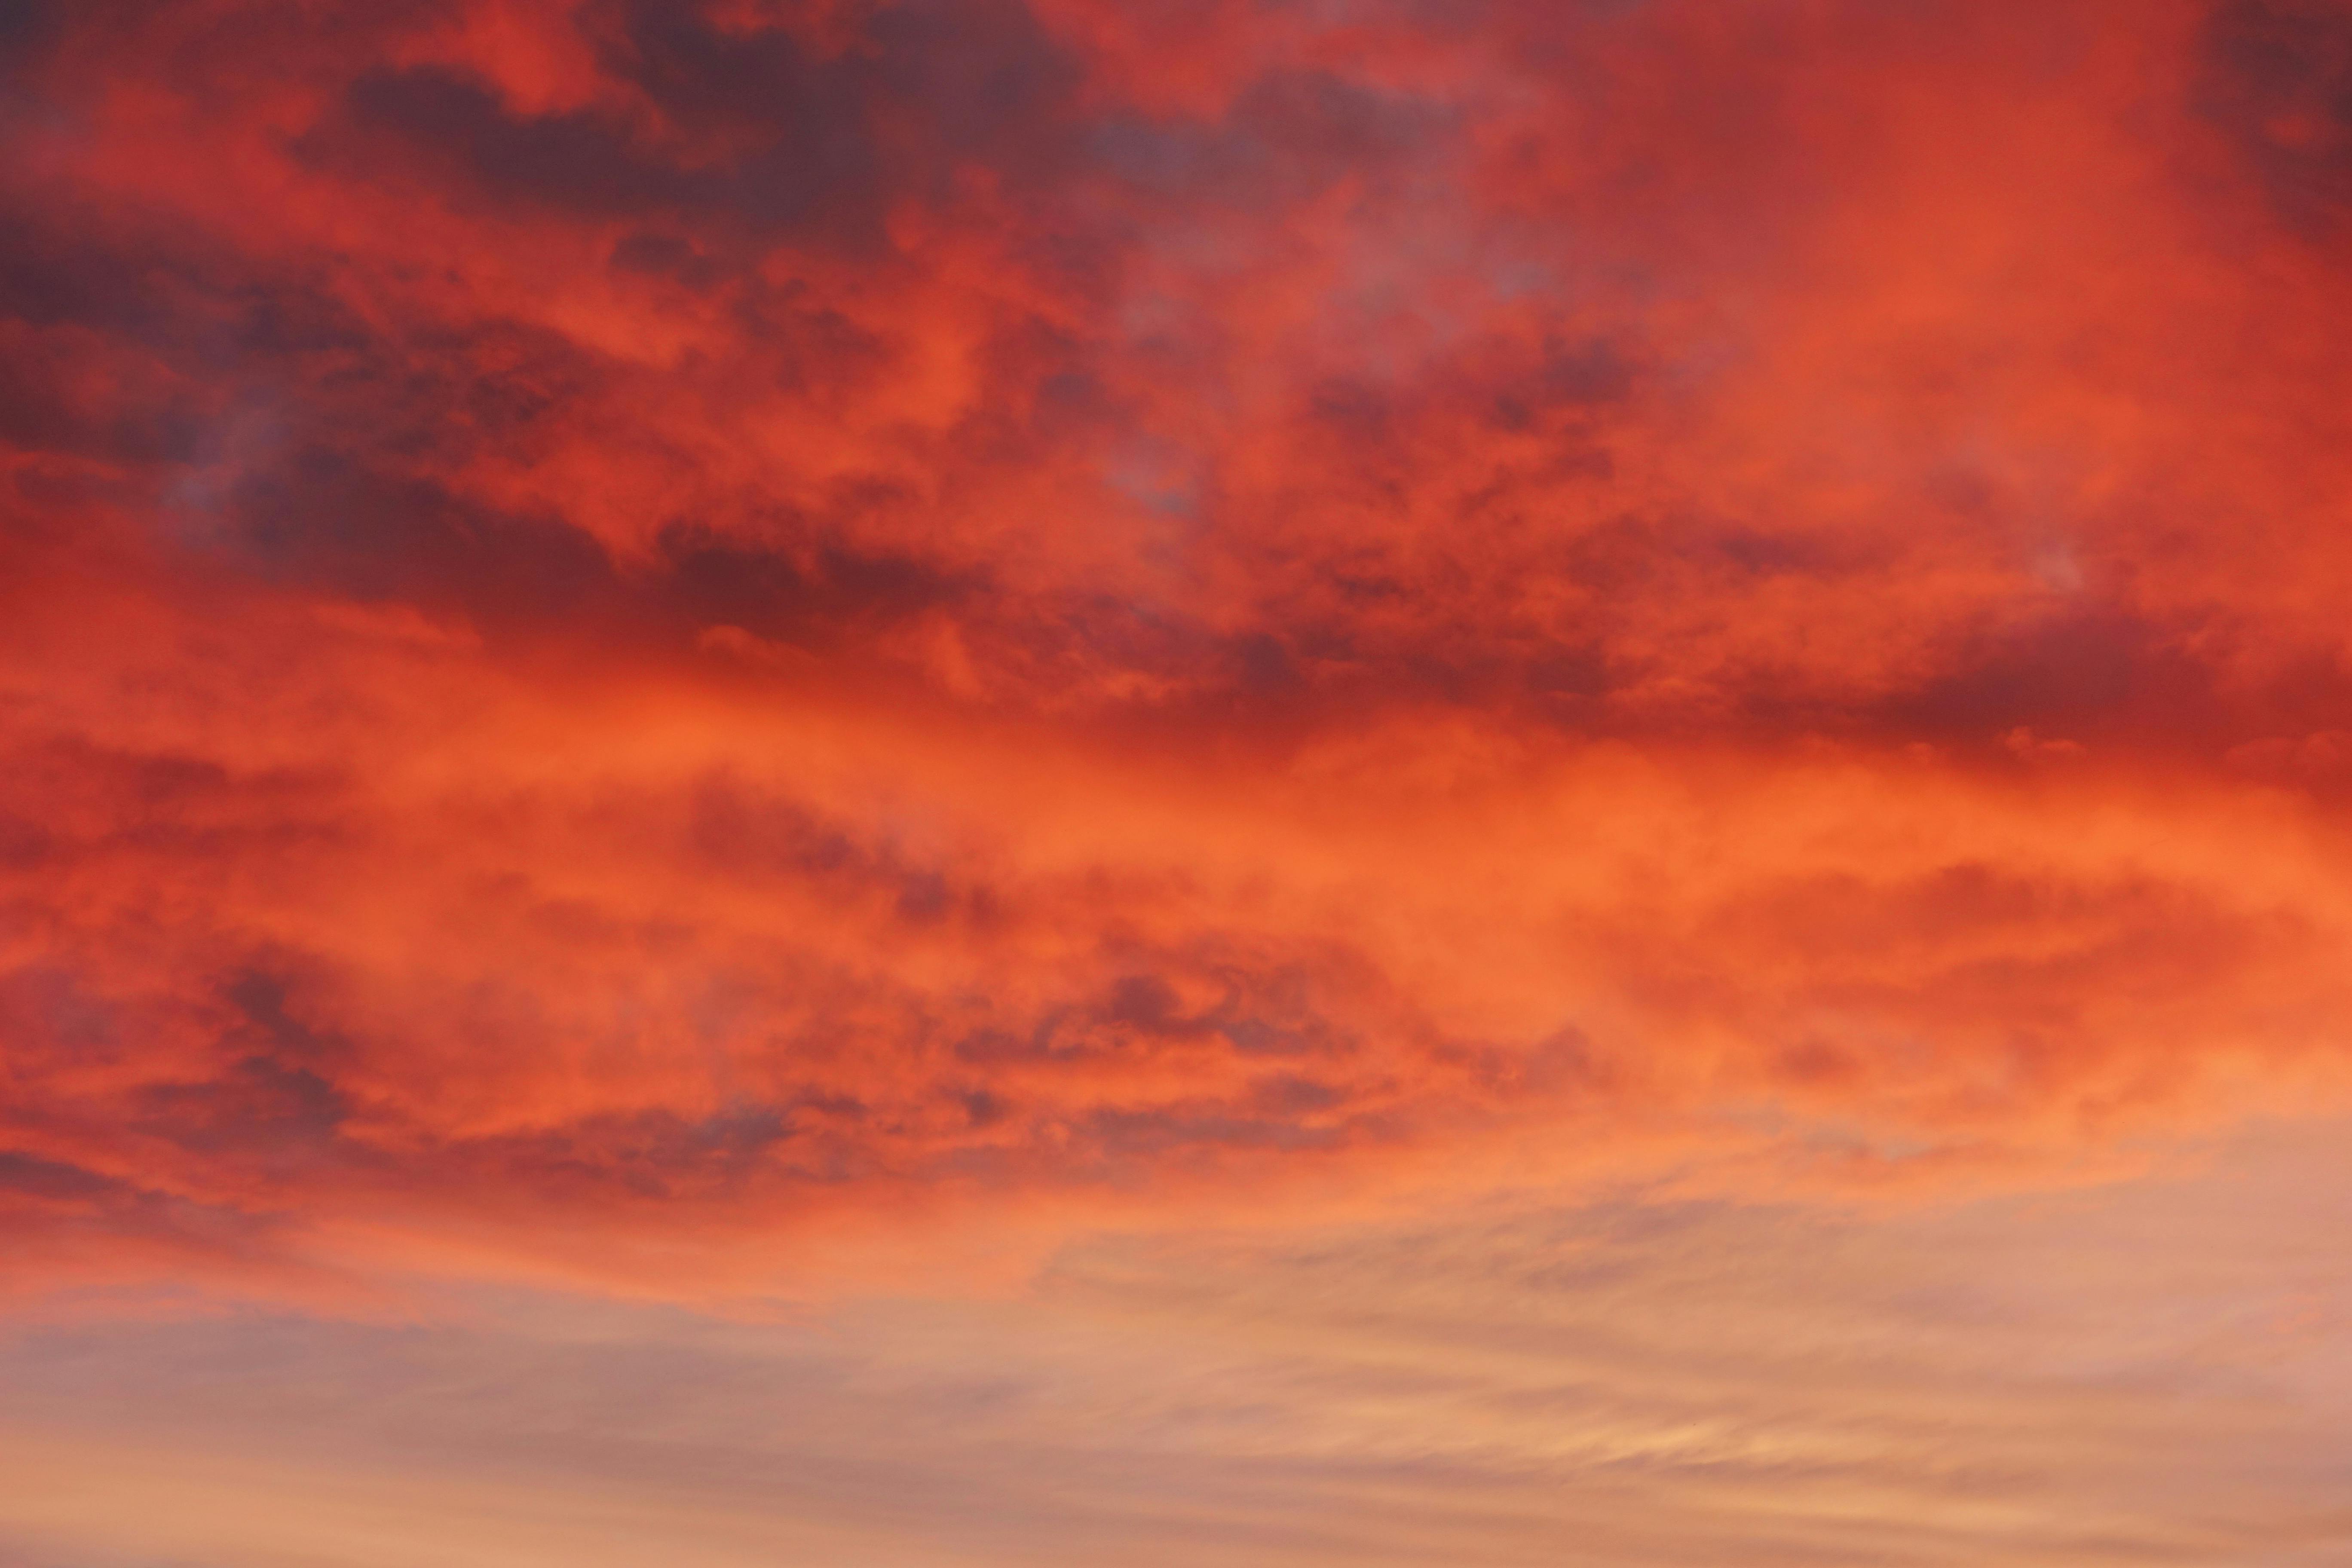 Những bức ảnh màu cam đang chuyển dần sang màu tím khi mặt trời lặn sẽ khiến bạn thích thú và cảm thấy yên bình. Hãy xem ngay để thưởng thức hình ảnh đẹp như tranh vẽ!